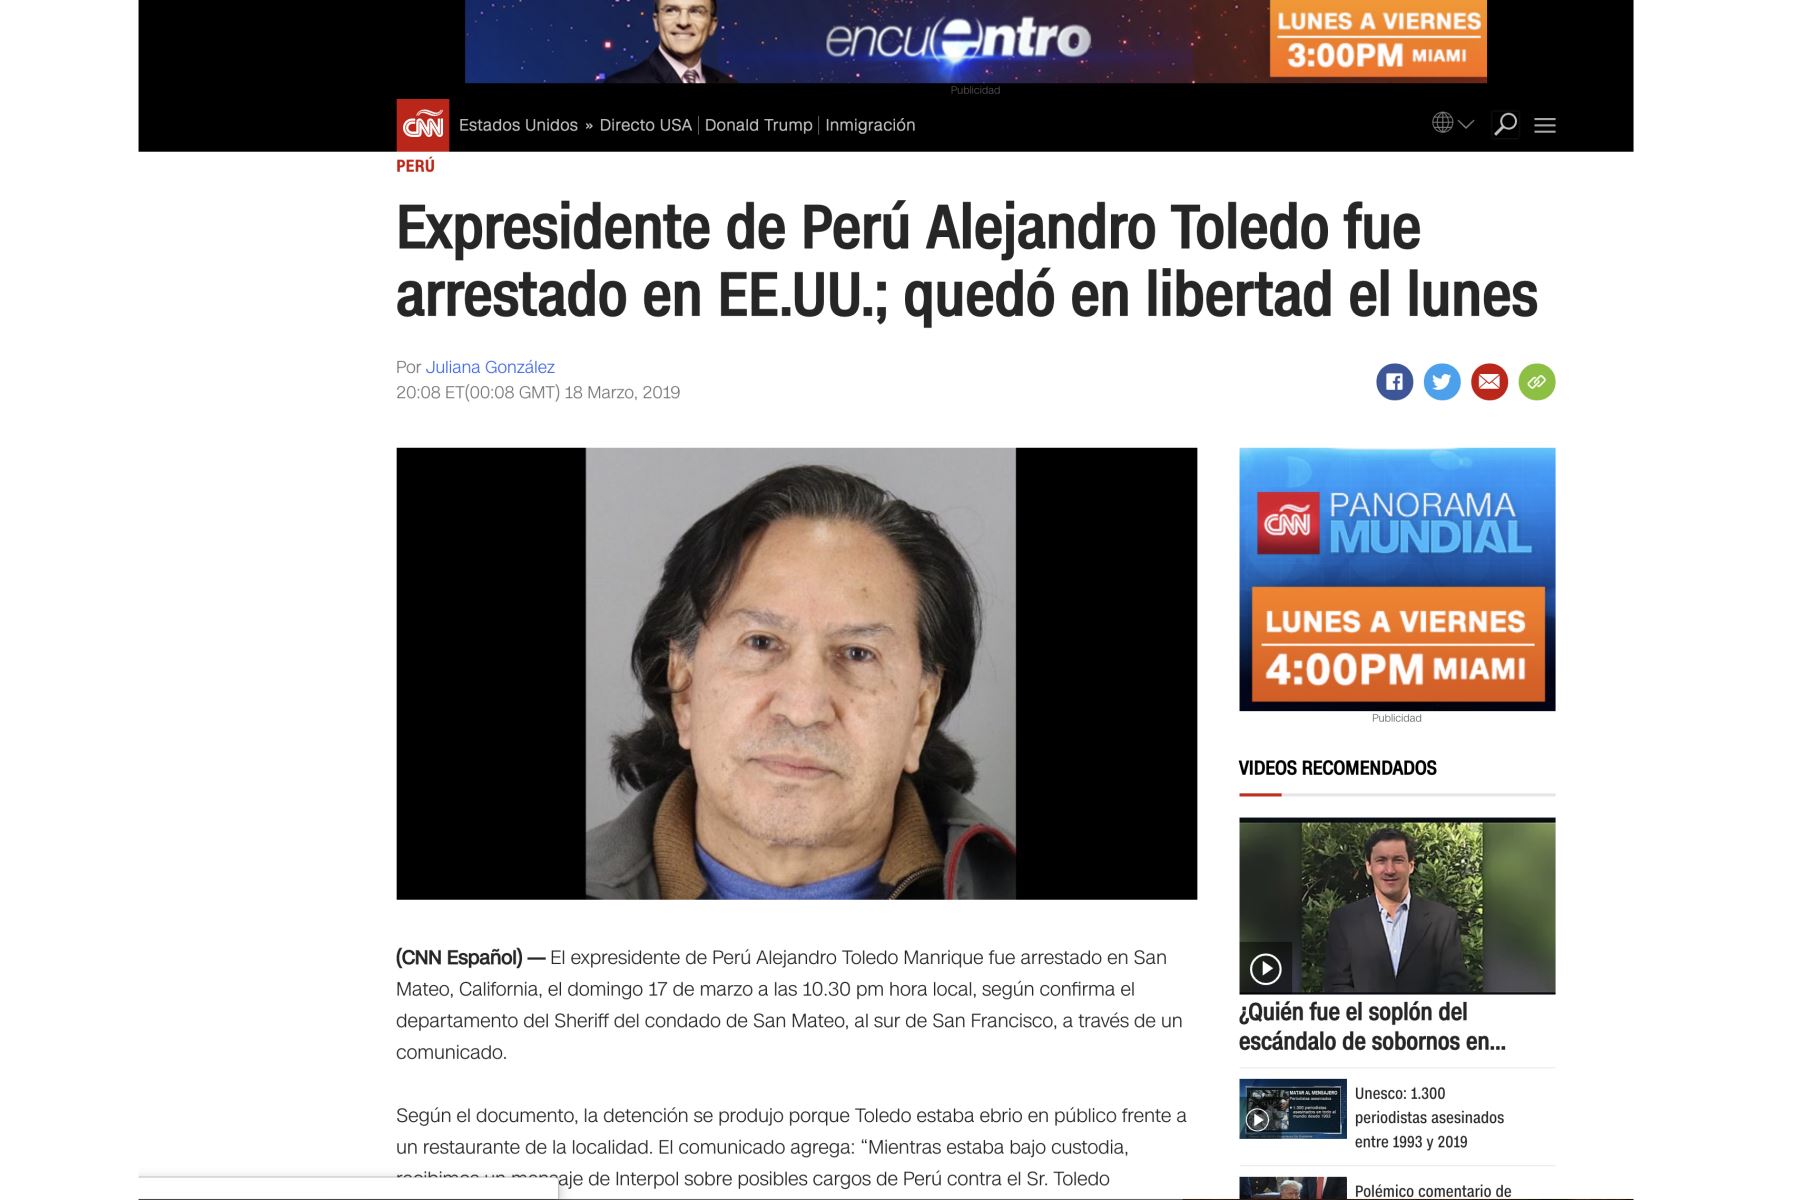 Así informan los medios internacionales sobre la detención de Alejandro Toledo por estar en estado de ebriedad, en los EE.UU.
Foto: ANDINA/Internet